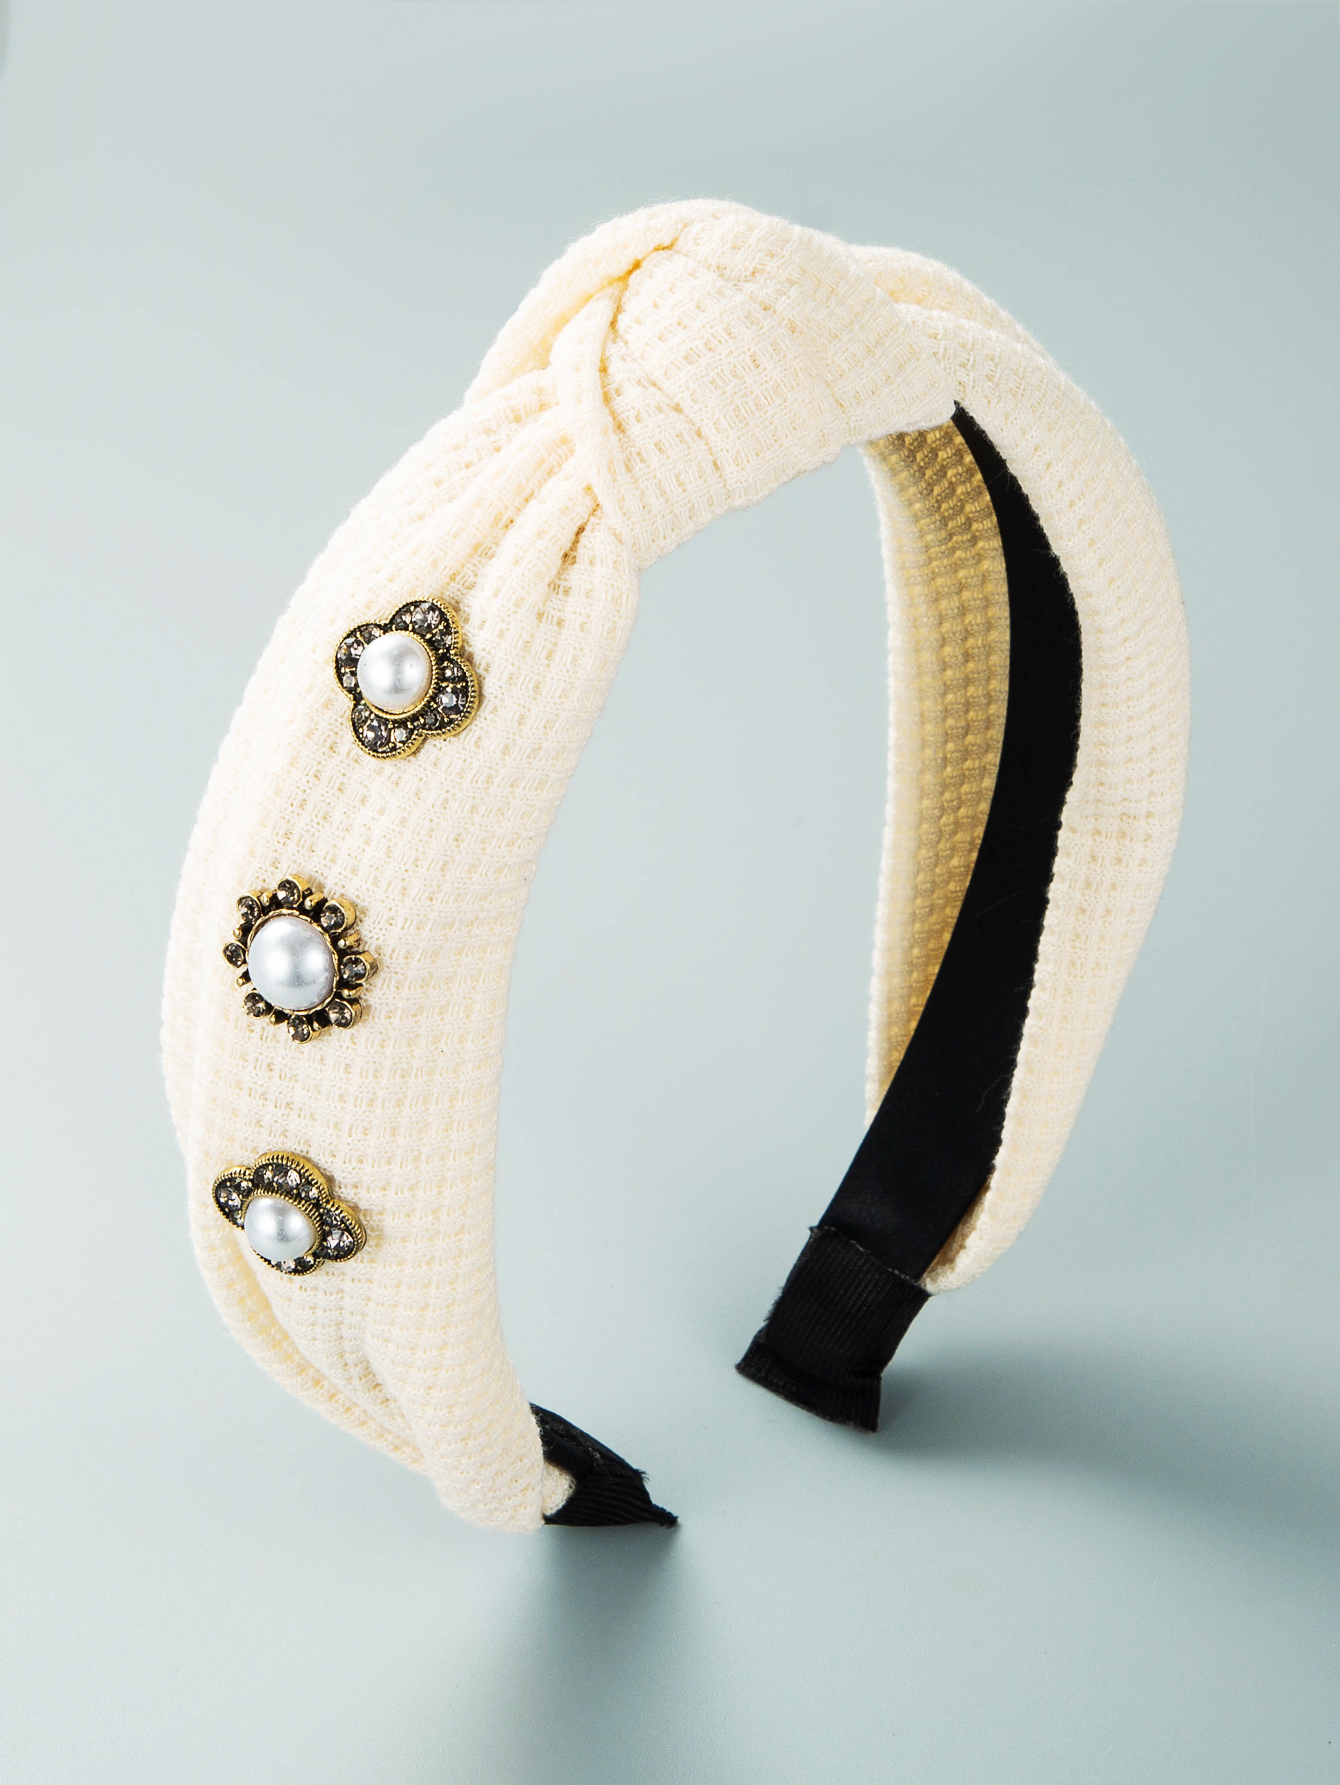 Stirnband aus geknotetem Stoff im koreanischen Stil mit eingelegten Perlenpicture3